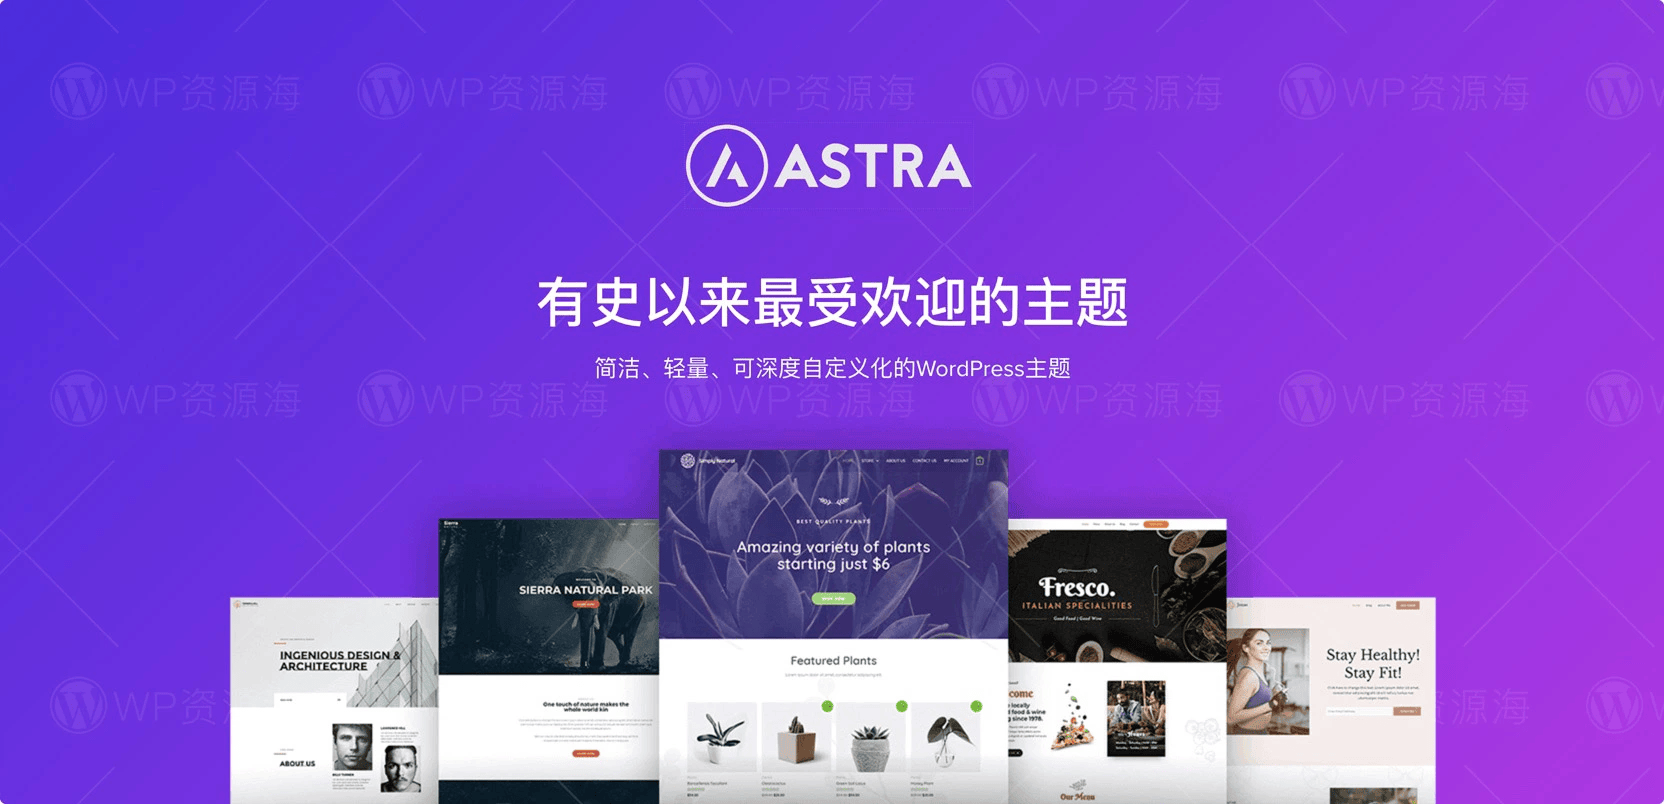 【正版】Astra Growth Bundle 全套正版key激活终身永久授权支持在线更新插图-WordPress资源海